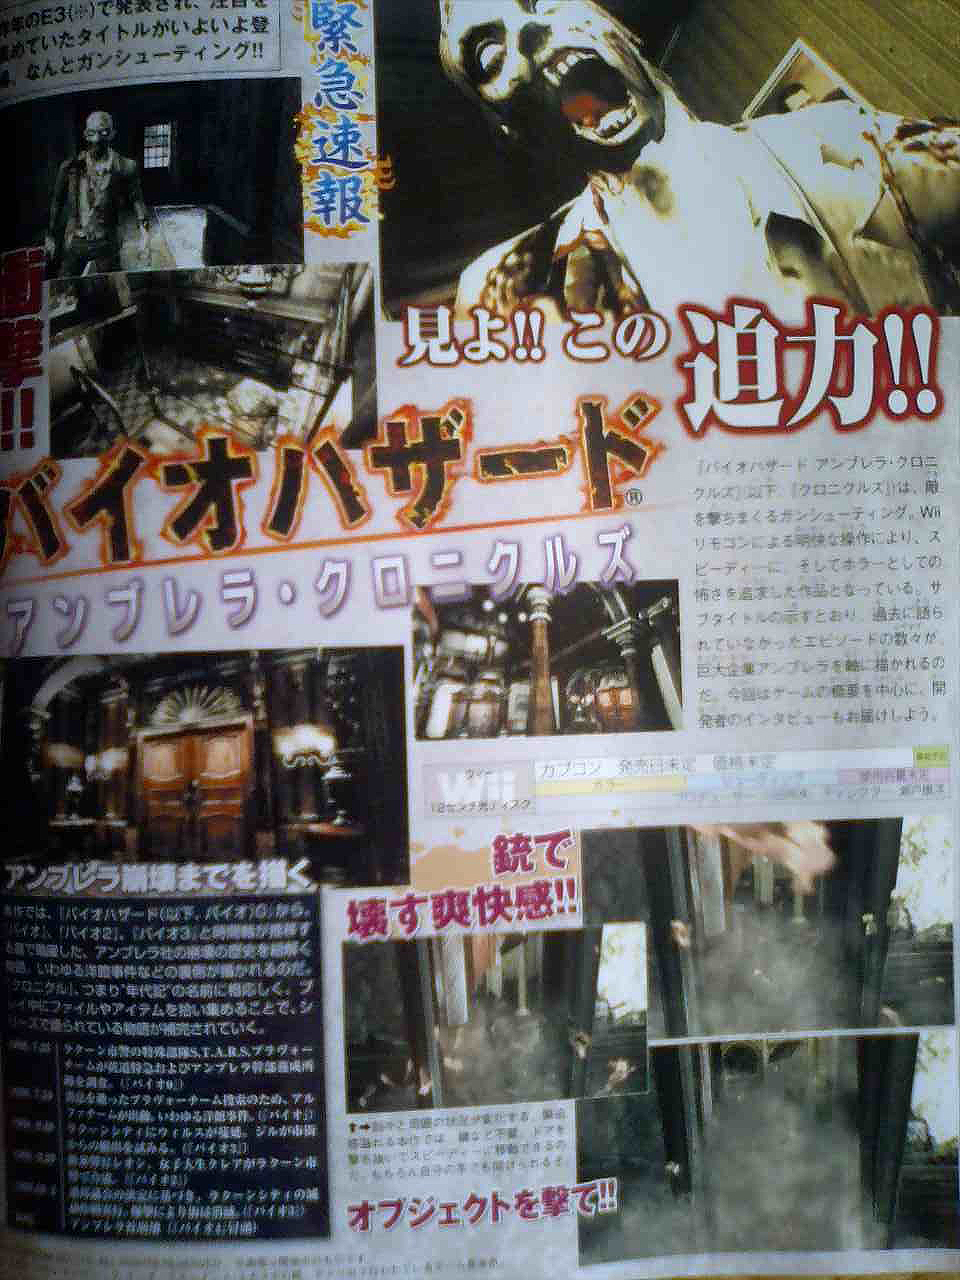 Resident Evil Umbrella Chronicles, mint FPS?